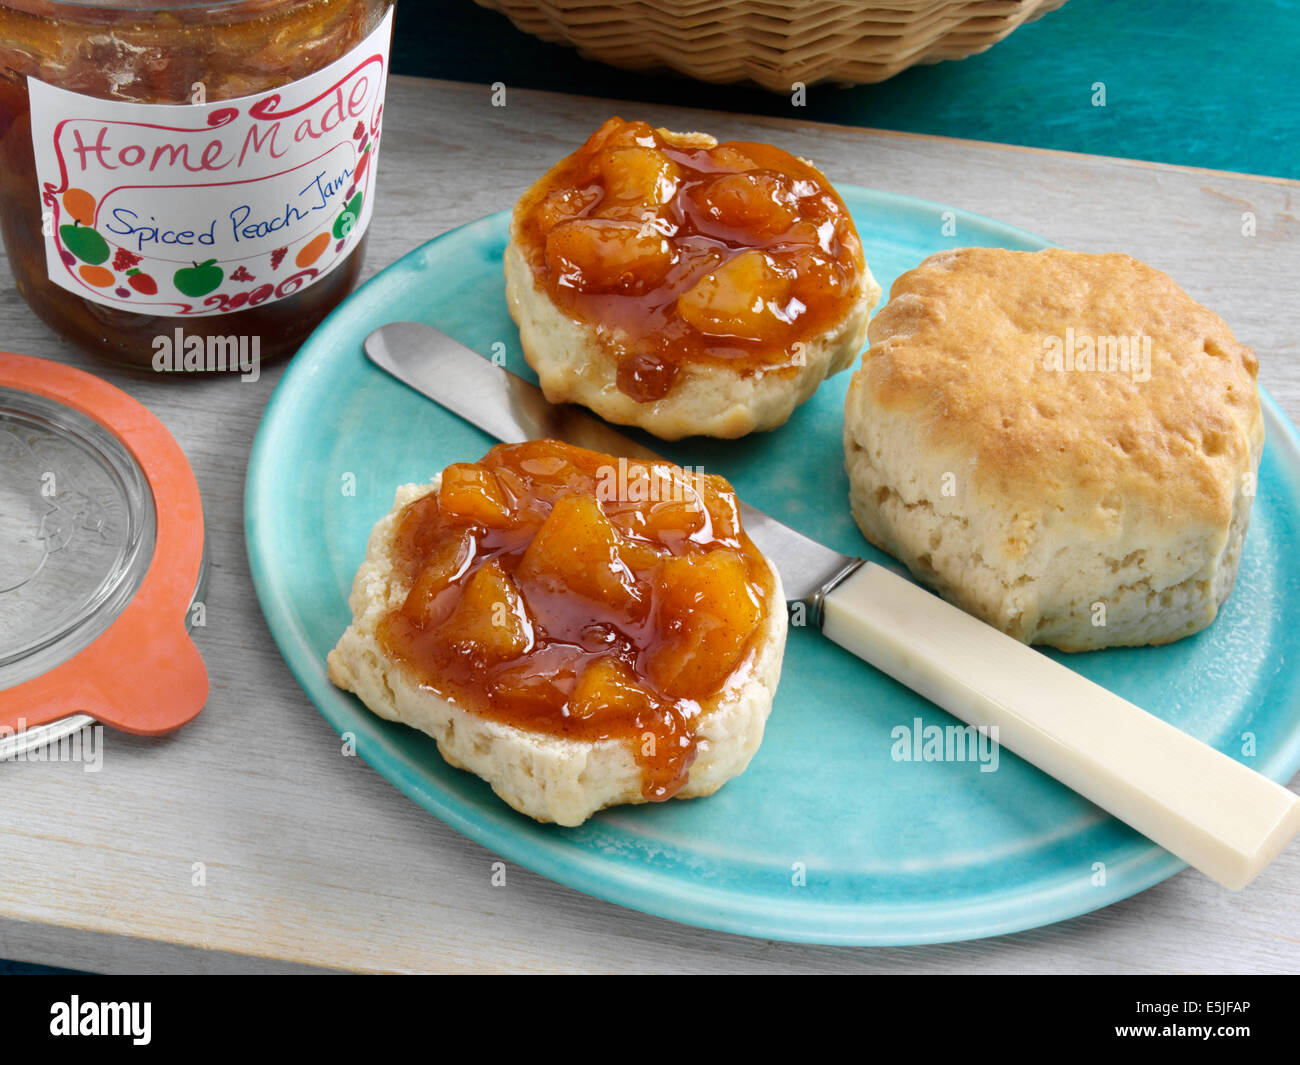 Spiced peach jam Stock Photo